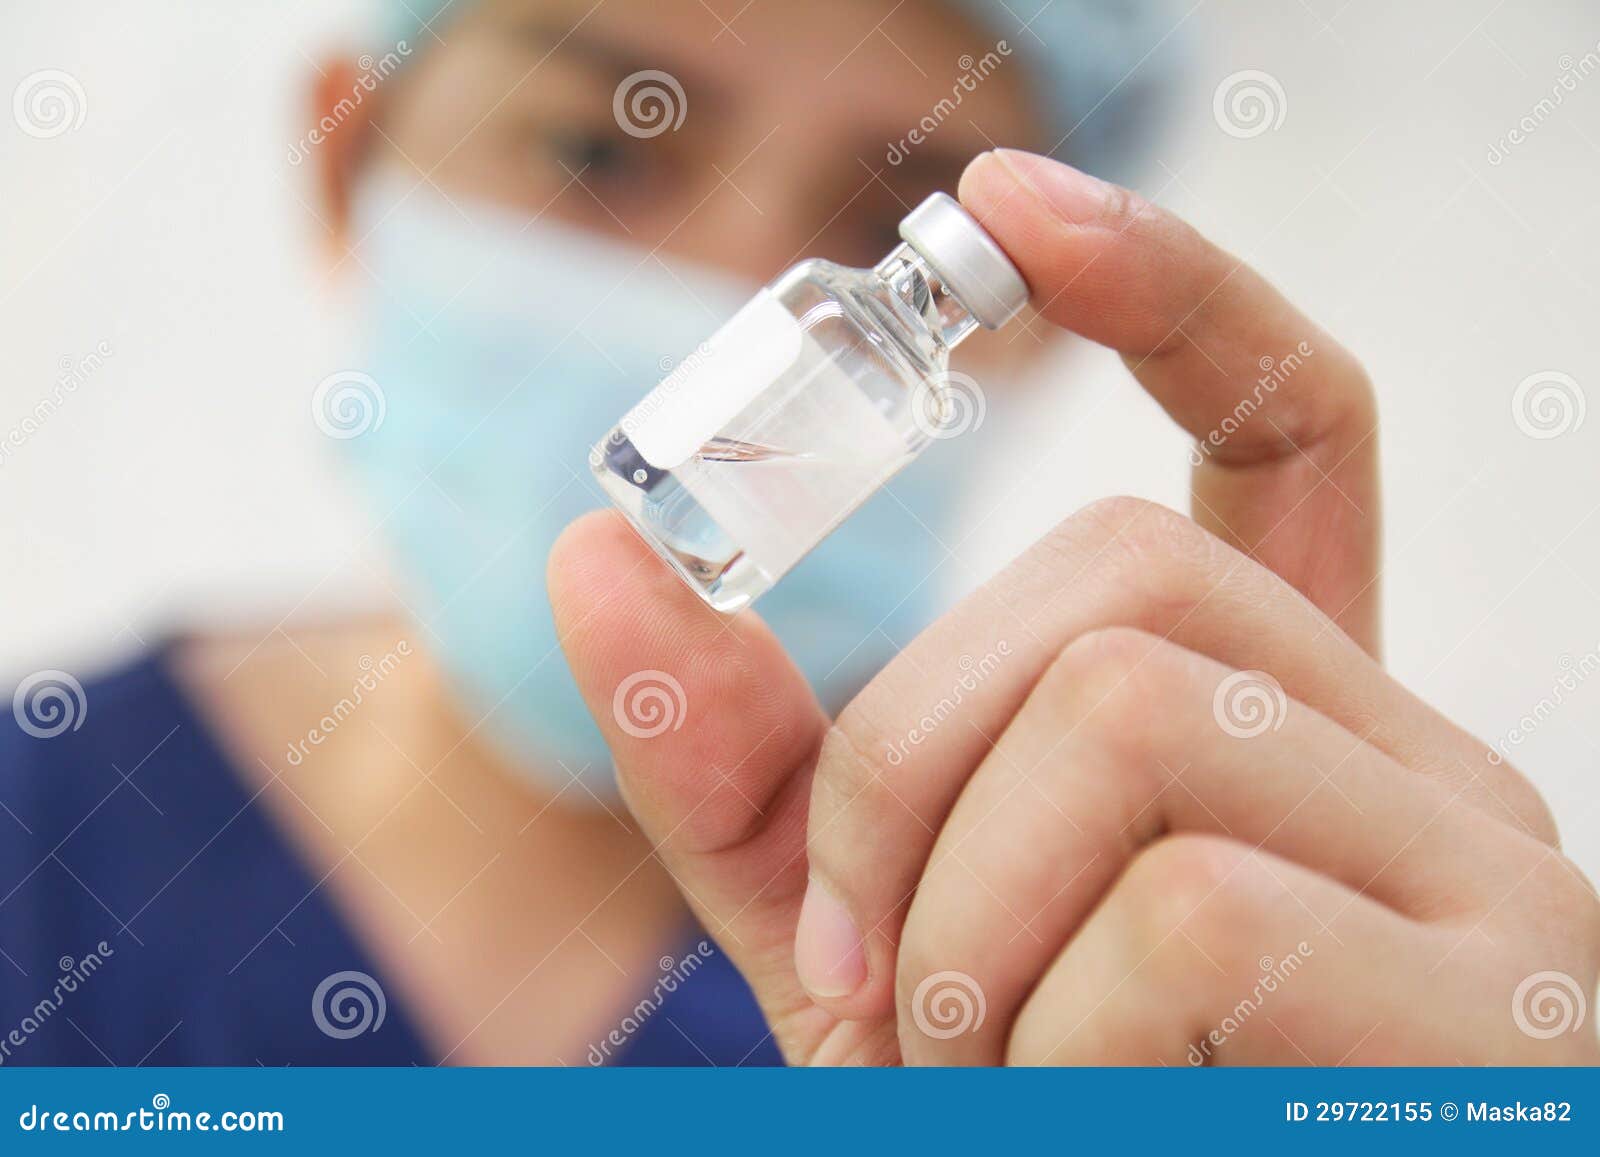 vial of medicine